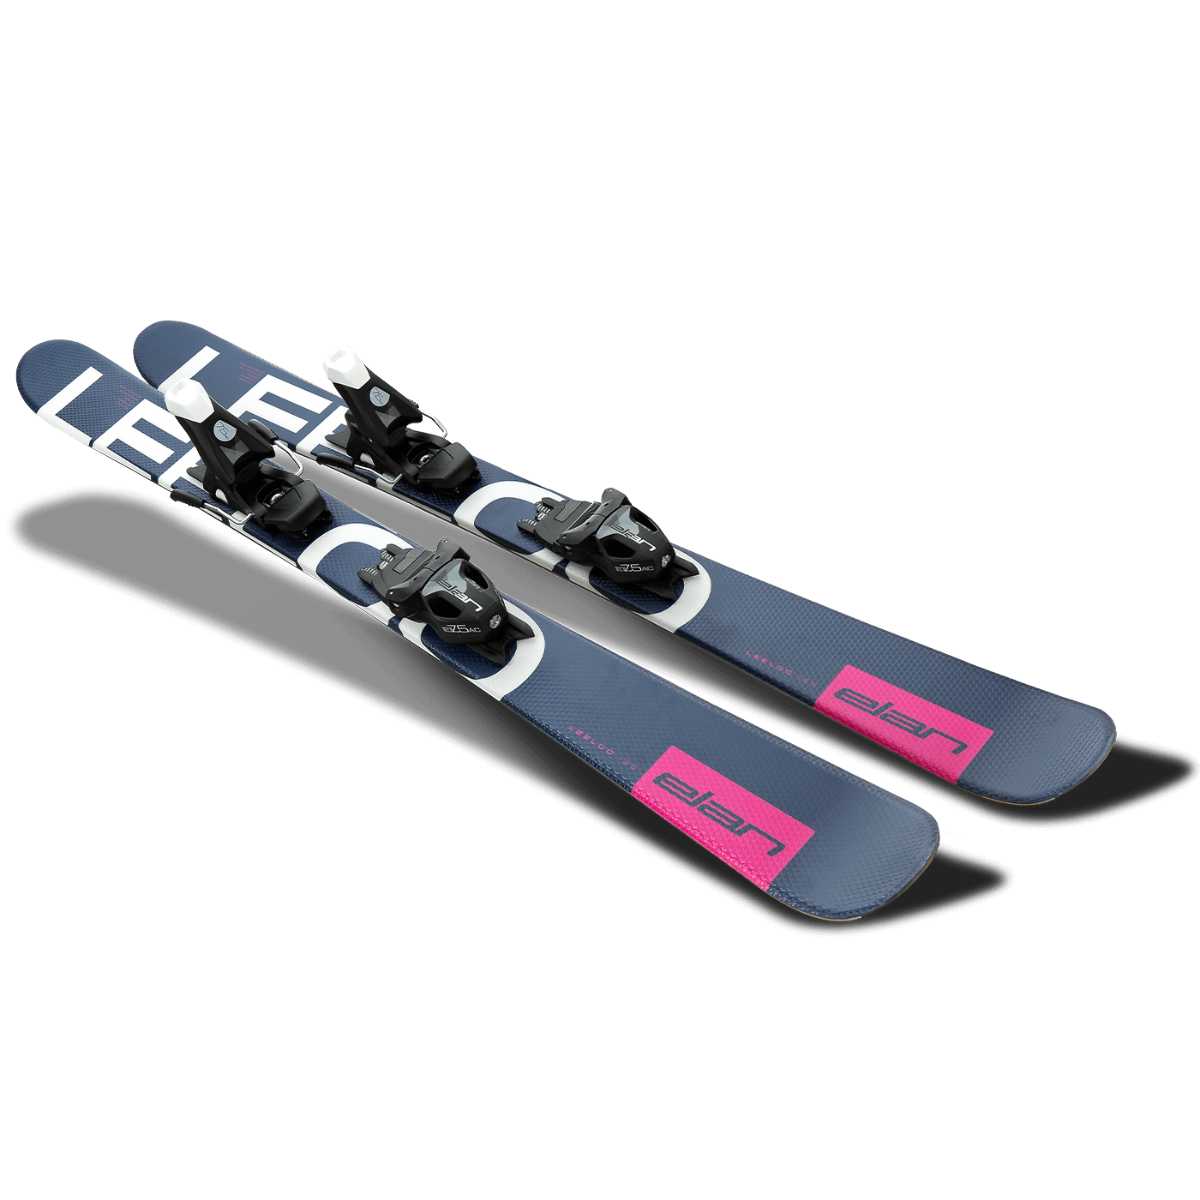 Elan Leeloo Team QS Freestyle Skis + EL 7.5 WB Bindings - 2022 - DISCONTINUED SKIS Elan   